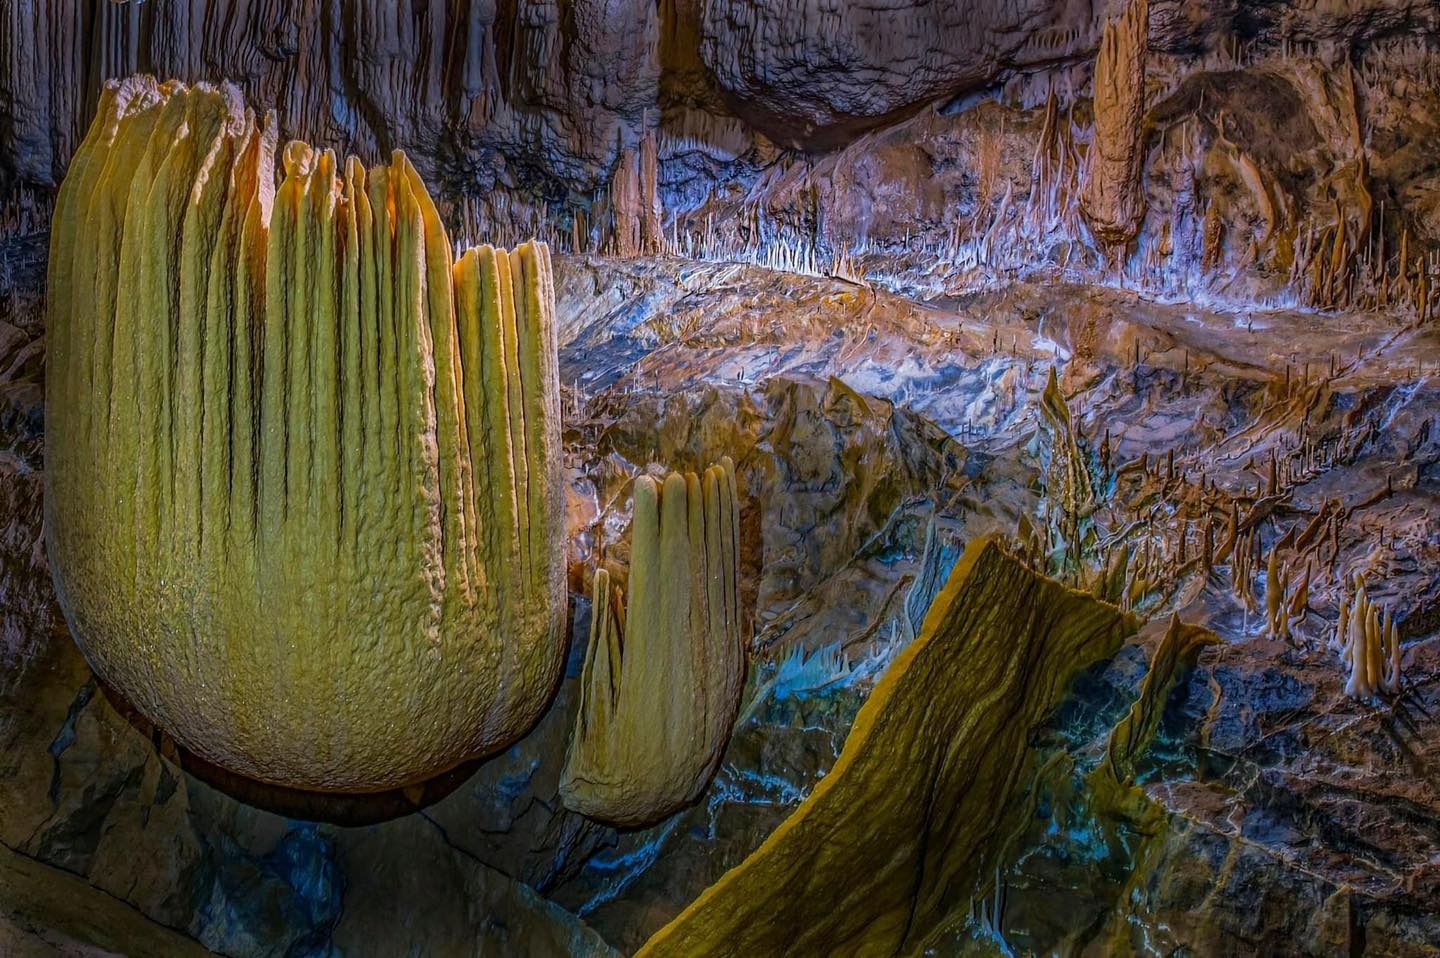 Mê mẩn vẻ đẹp siêu thực của hệ thống hang động mới ở Quảng Bình - ảnh 4